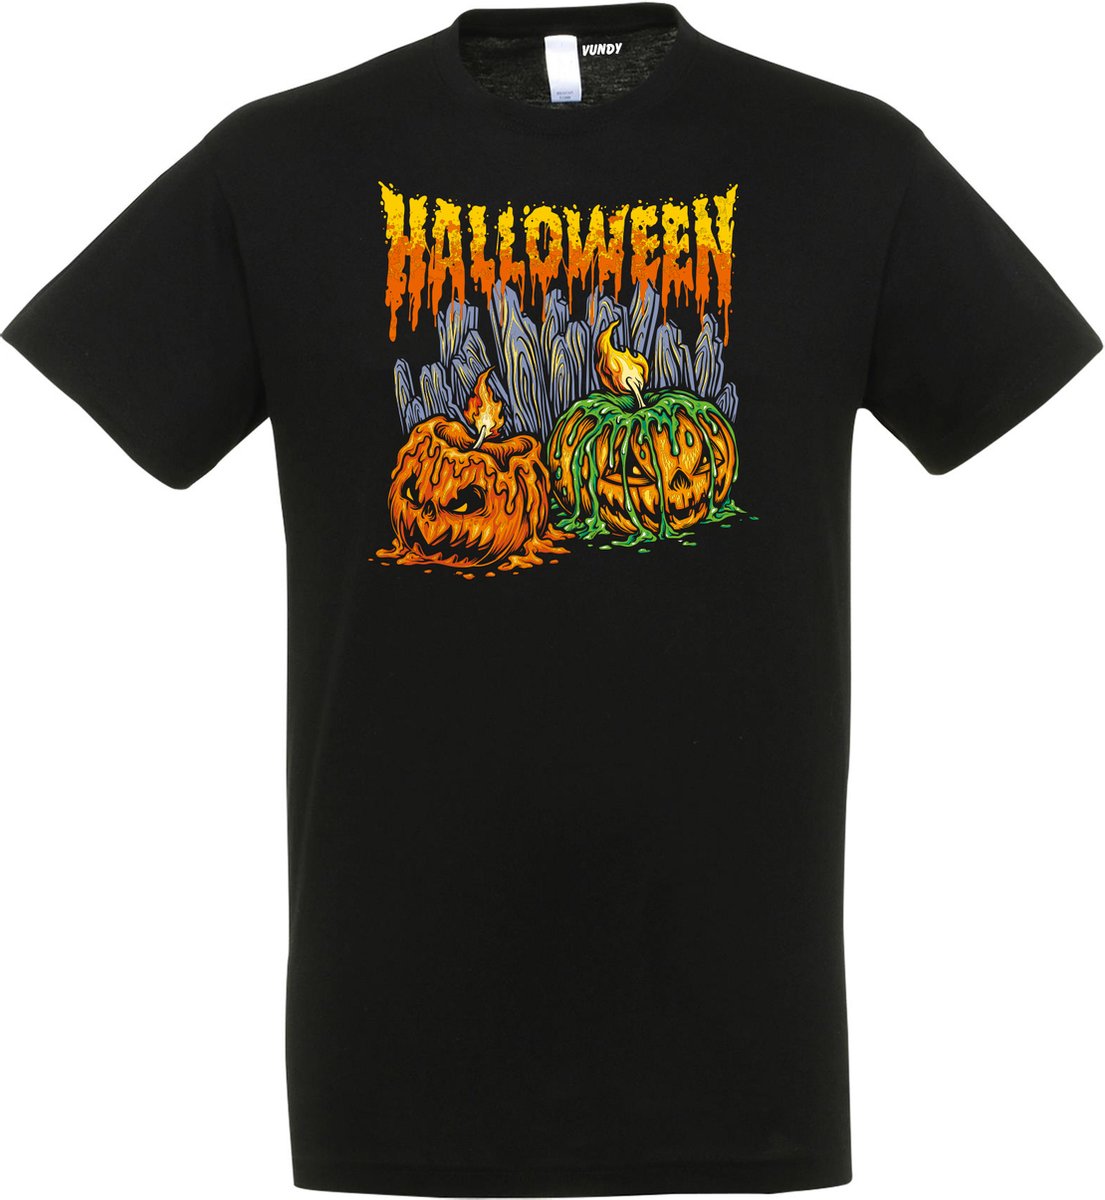 T-shirt kinderen Halloween Pompoen met kaarsjes | Halloween kostuum kind dames heren | verkleedkleren meisje jongen | Zwart | maat 128